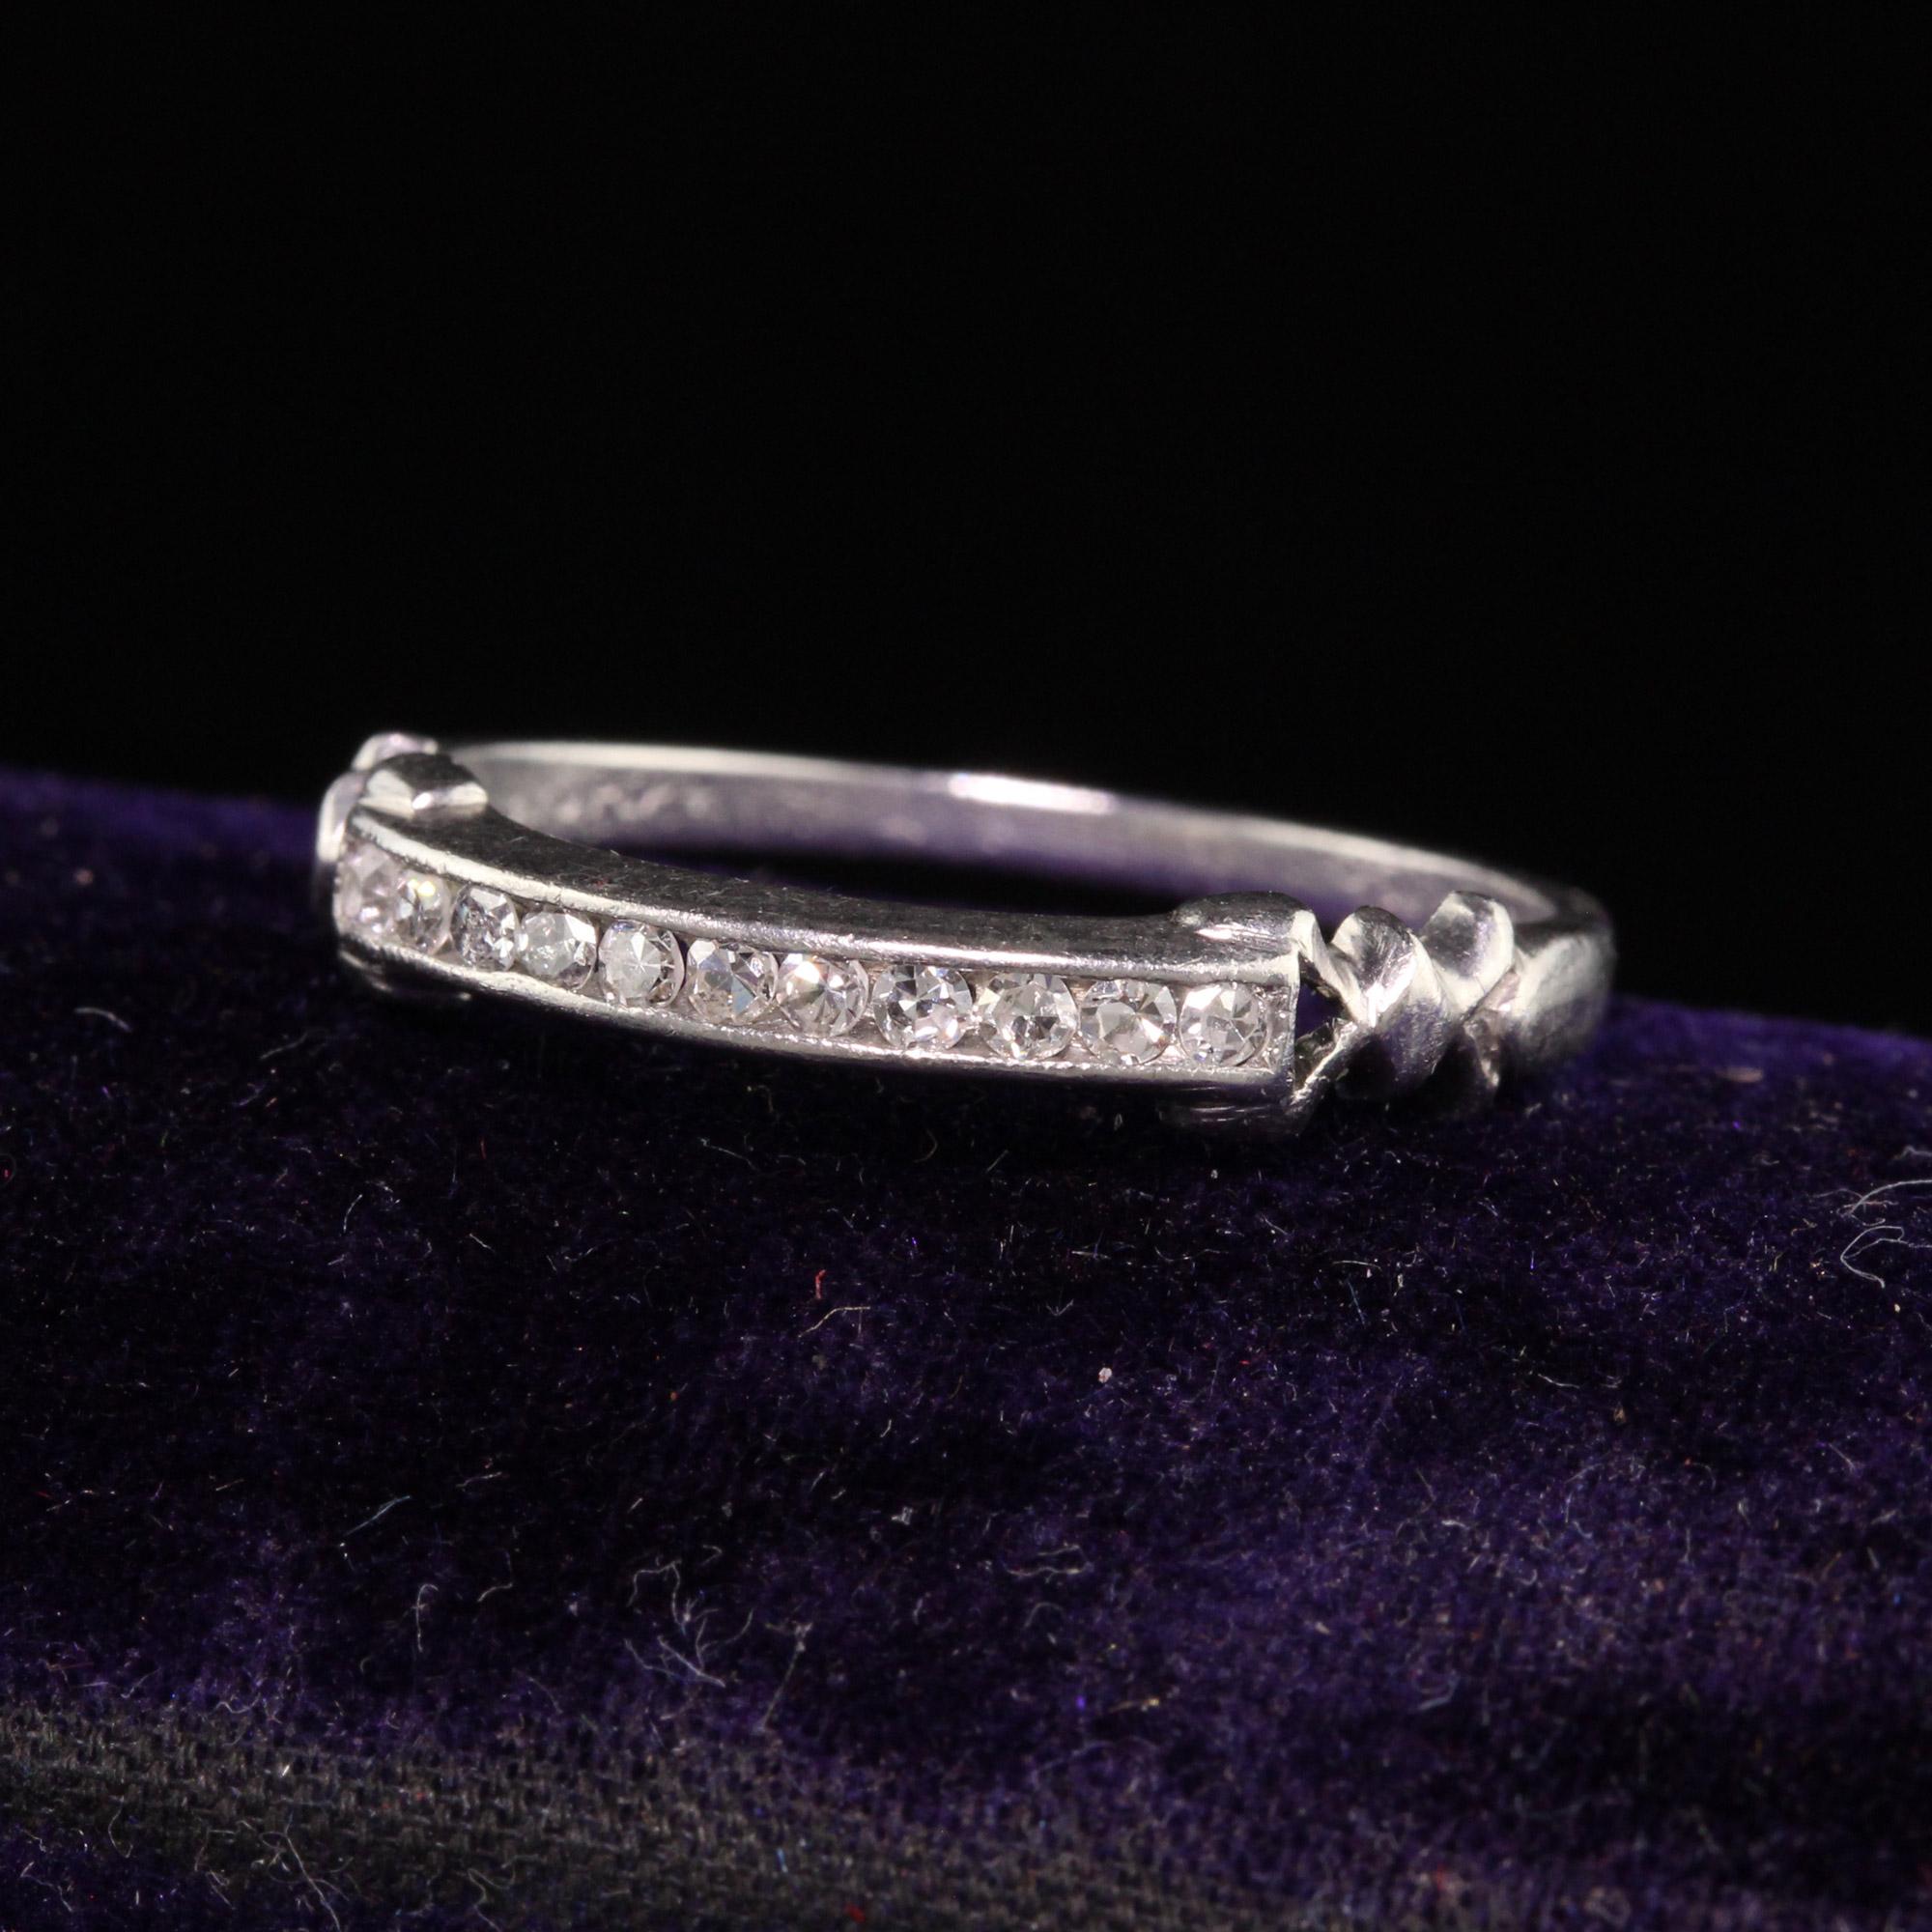 Magnifique alliance en platine Art déco ancienne avec diamant taille unique. Cette magnifique alliance présente des diamants à taille unique sur le dessus de l'anneau et des accents de ruban sur les côtés.

Article #R1120

Métal : Platine

Poids :